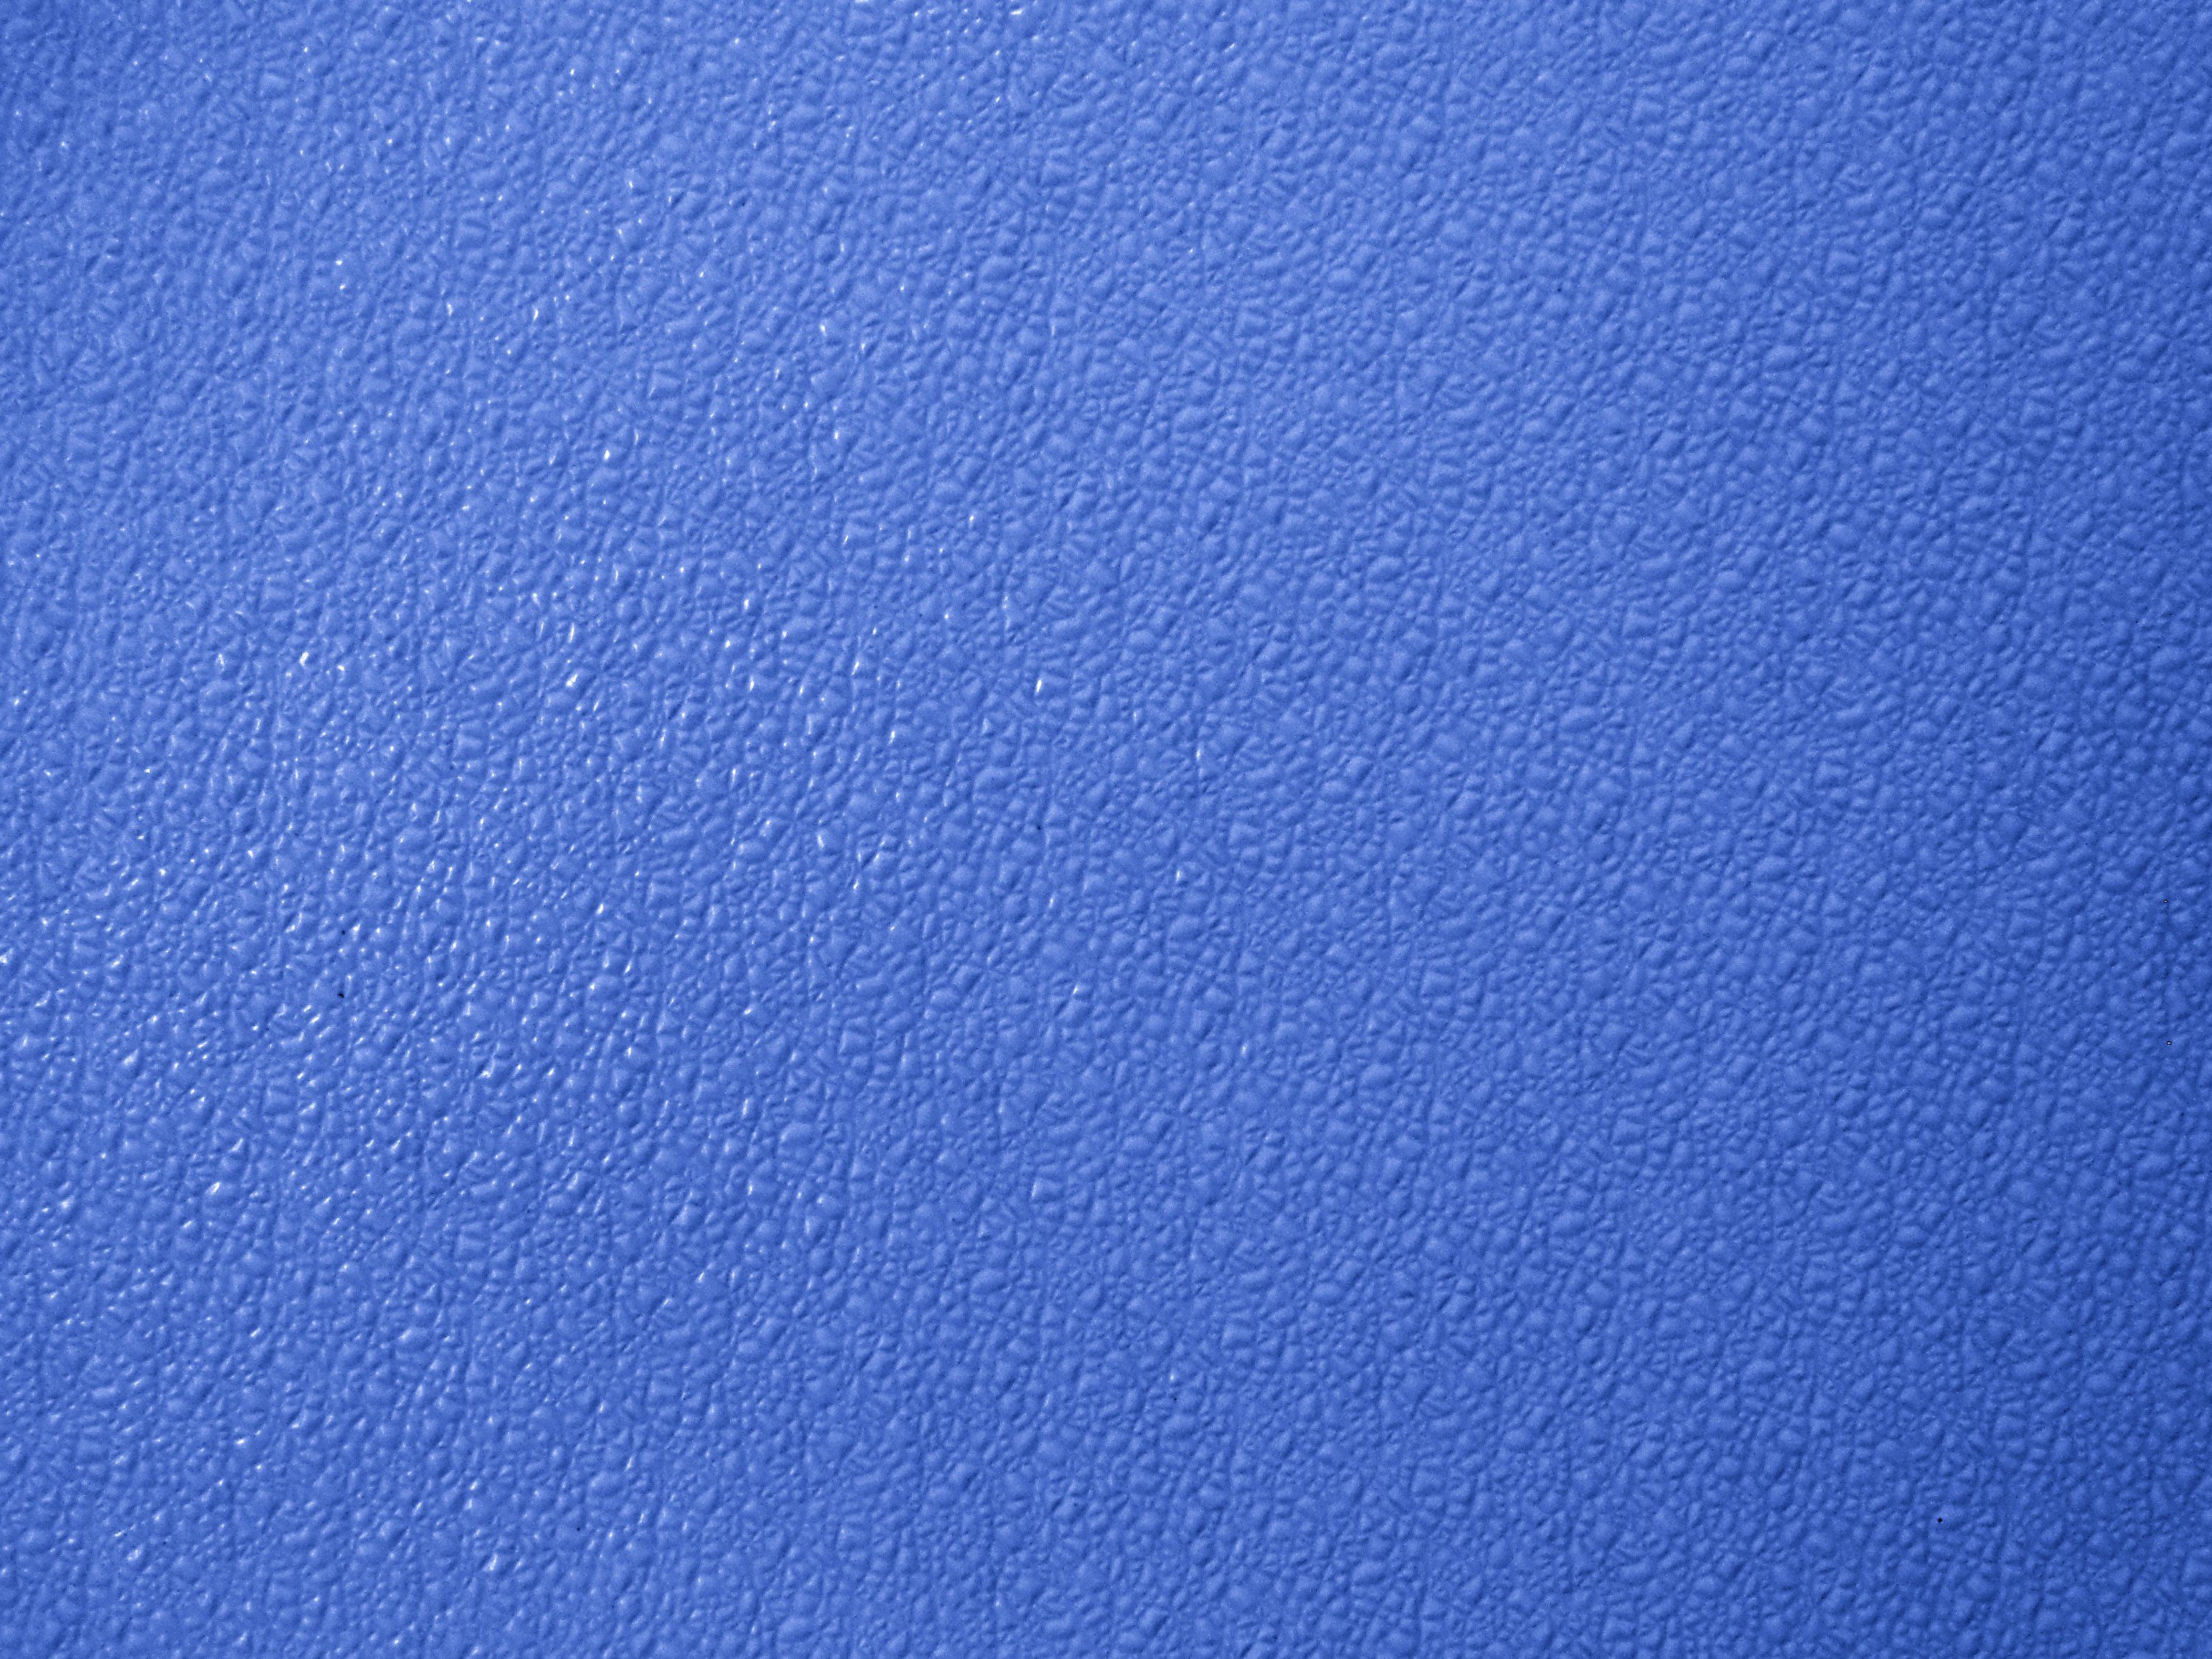 Bumpy Periwinkle Blue Plastic Texture Picture.